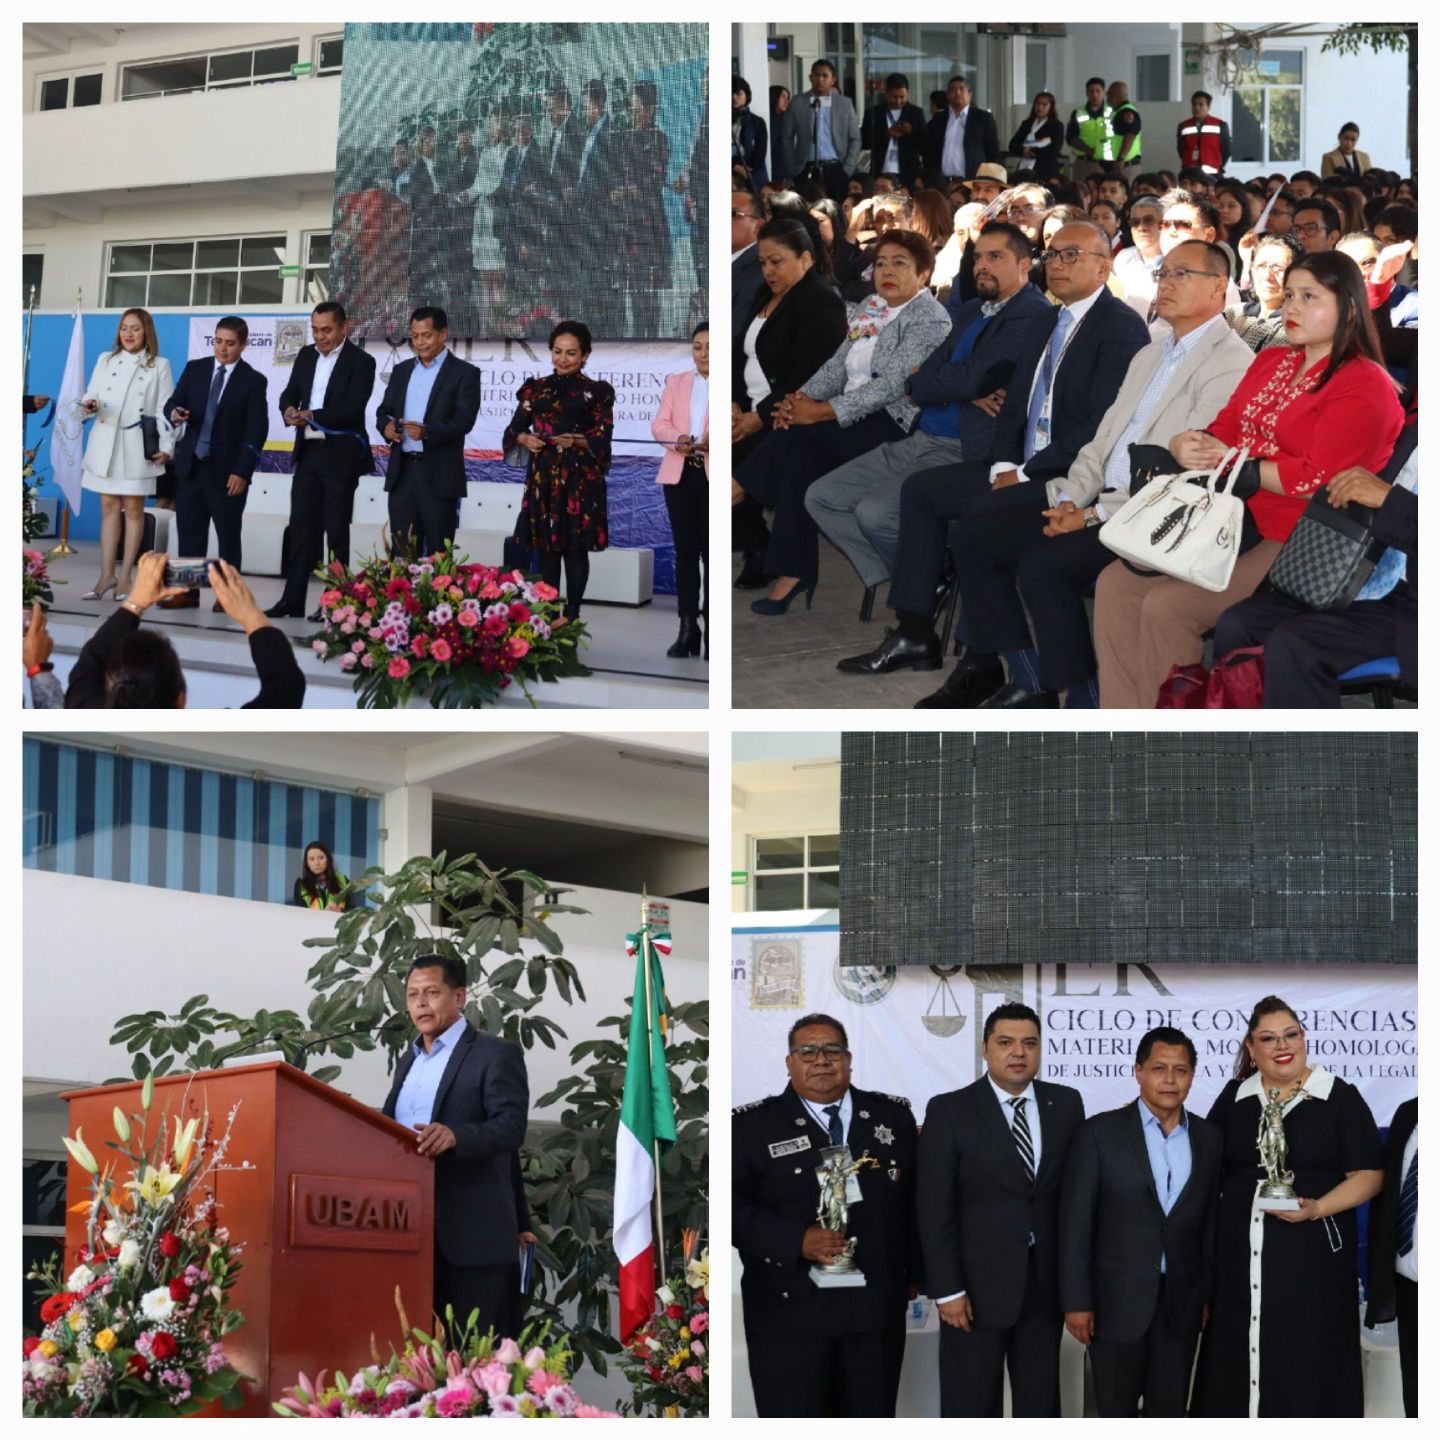 Juan Carlos Uribe inauguró
Primer Ciclo de Conferencias